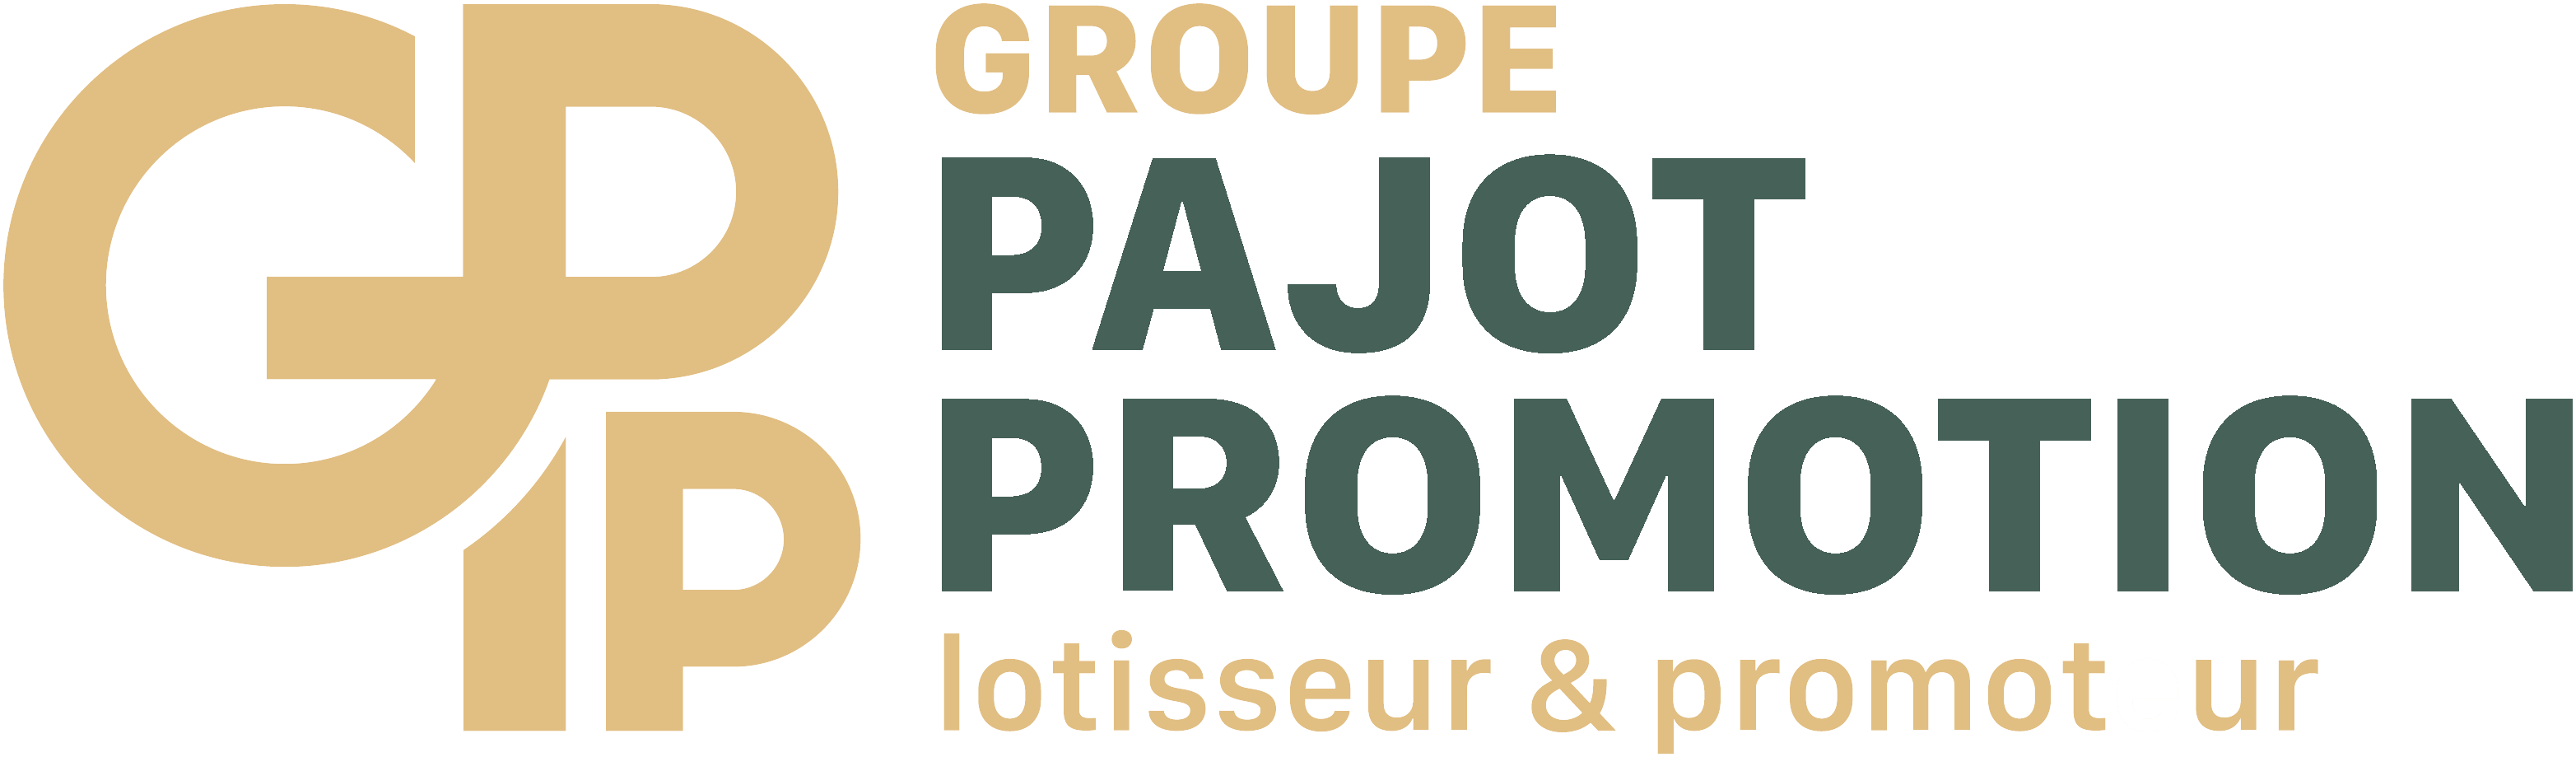 Pajot Promotion - Les Iris